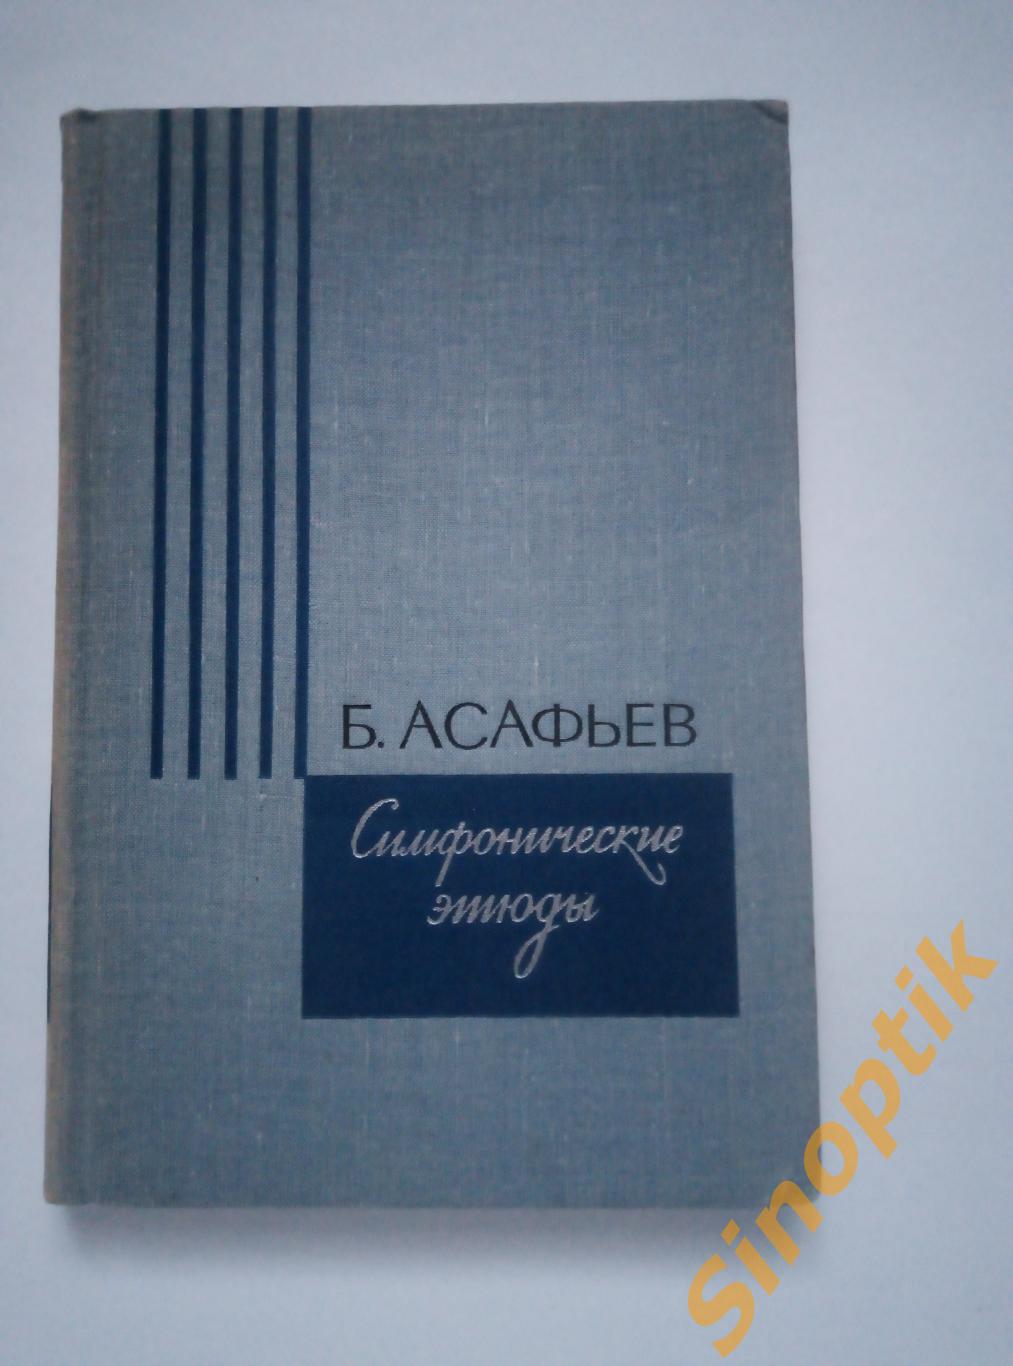 Б. Асафьев, Симфонические этюды, 1970